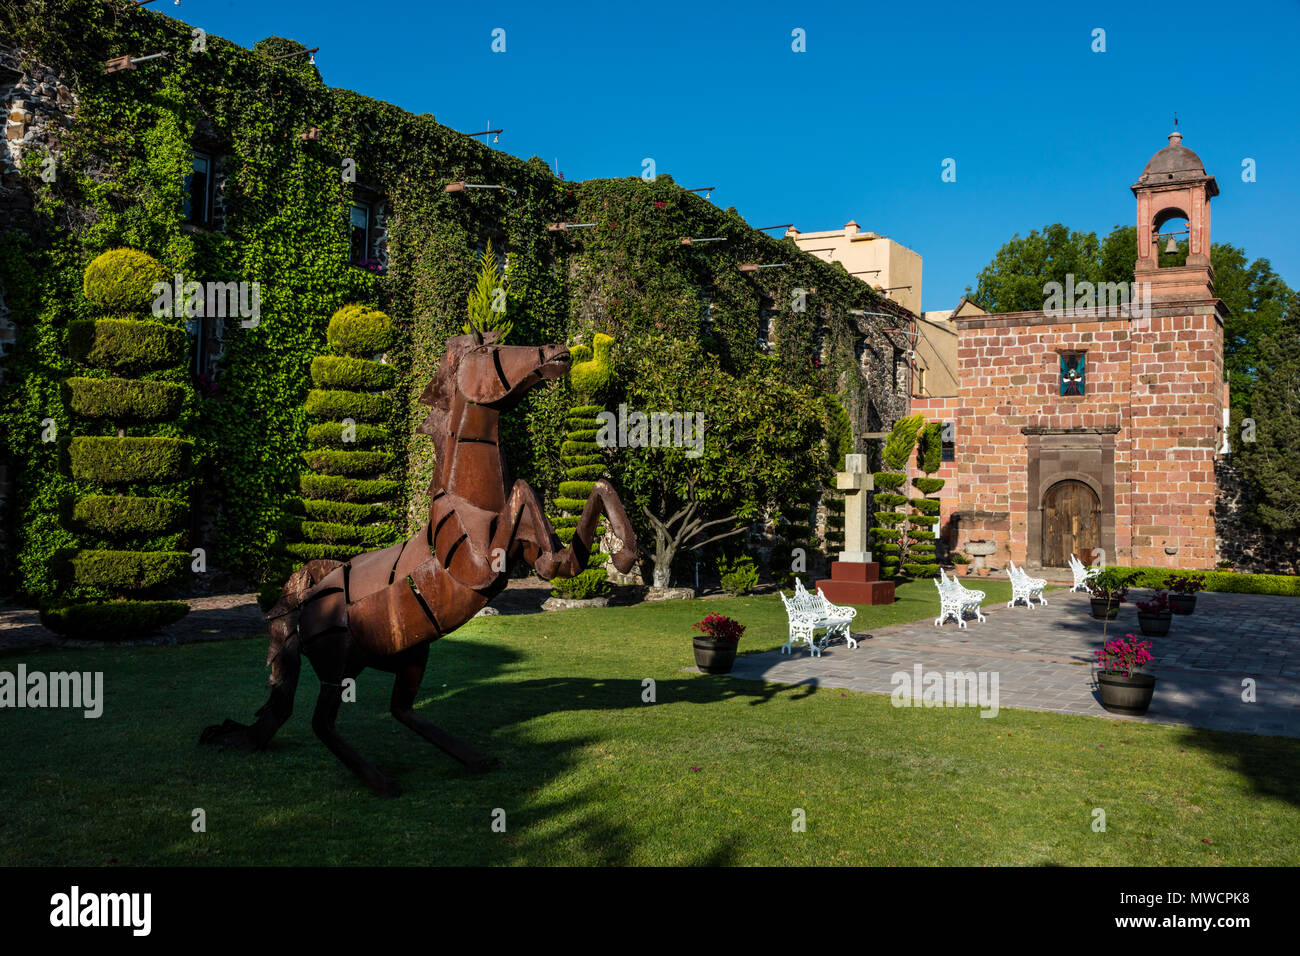 A horse scuplture graces the grounds of the HOTEL POSADA DE LA ALDEA - SAN MIGUEL DE ALLENDE, MEXICO Stock Photo